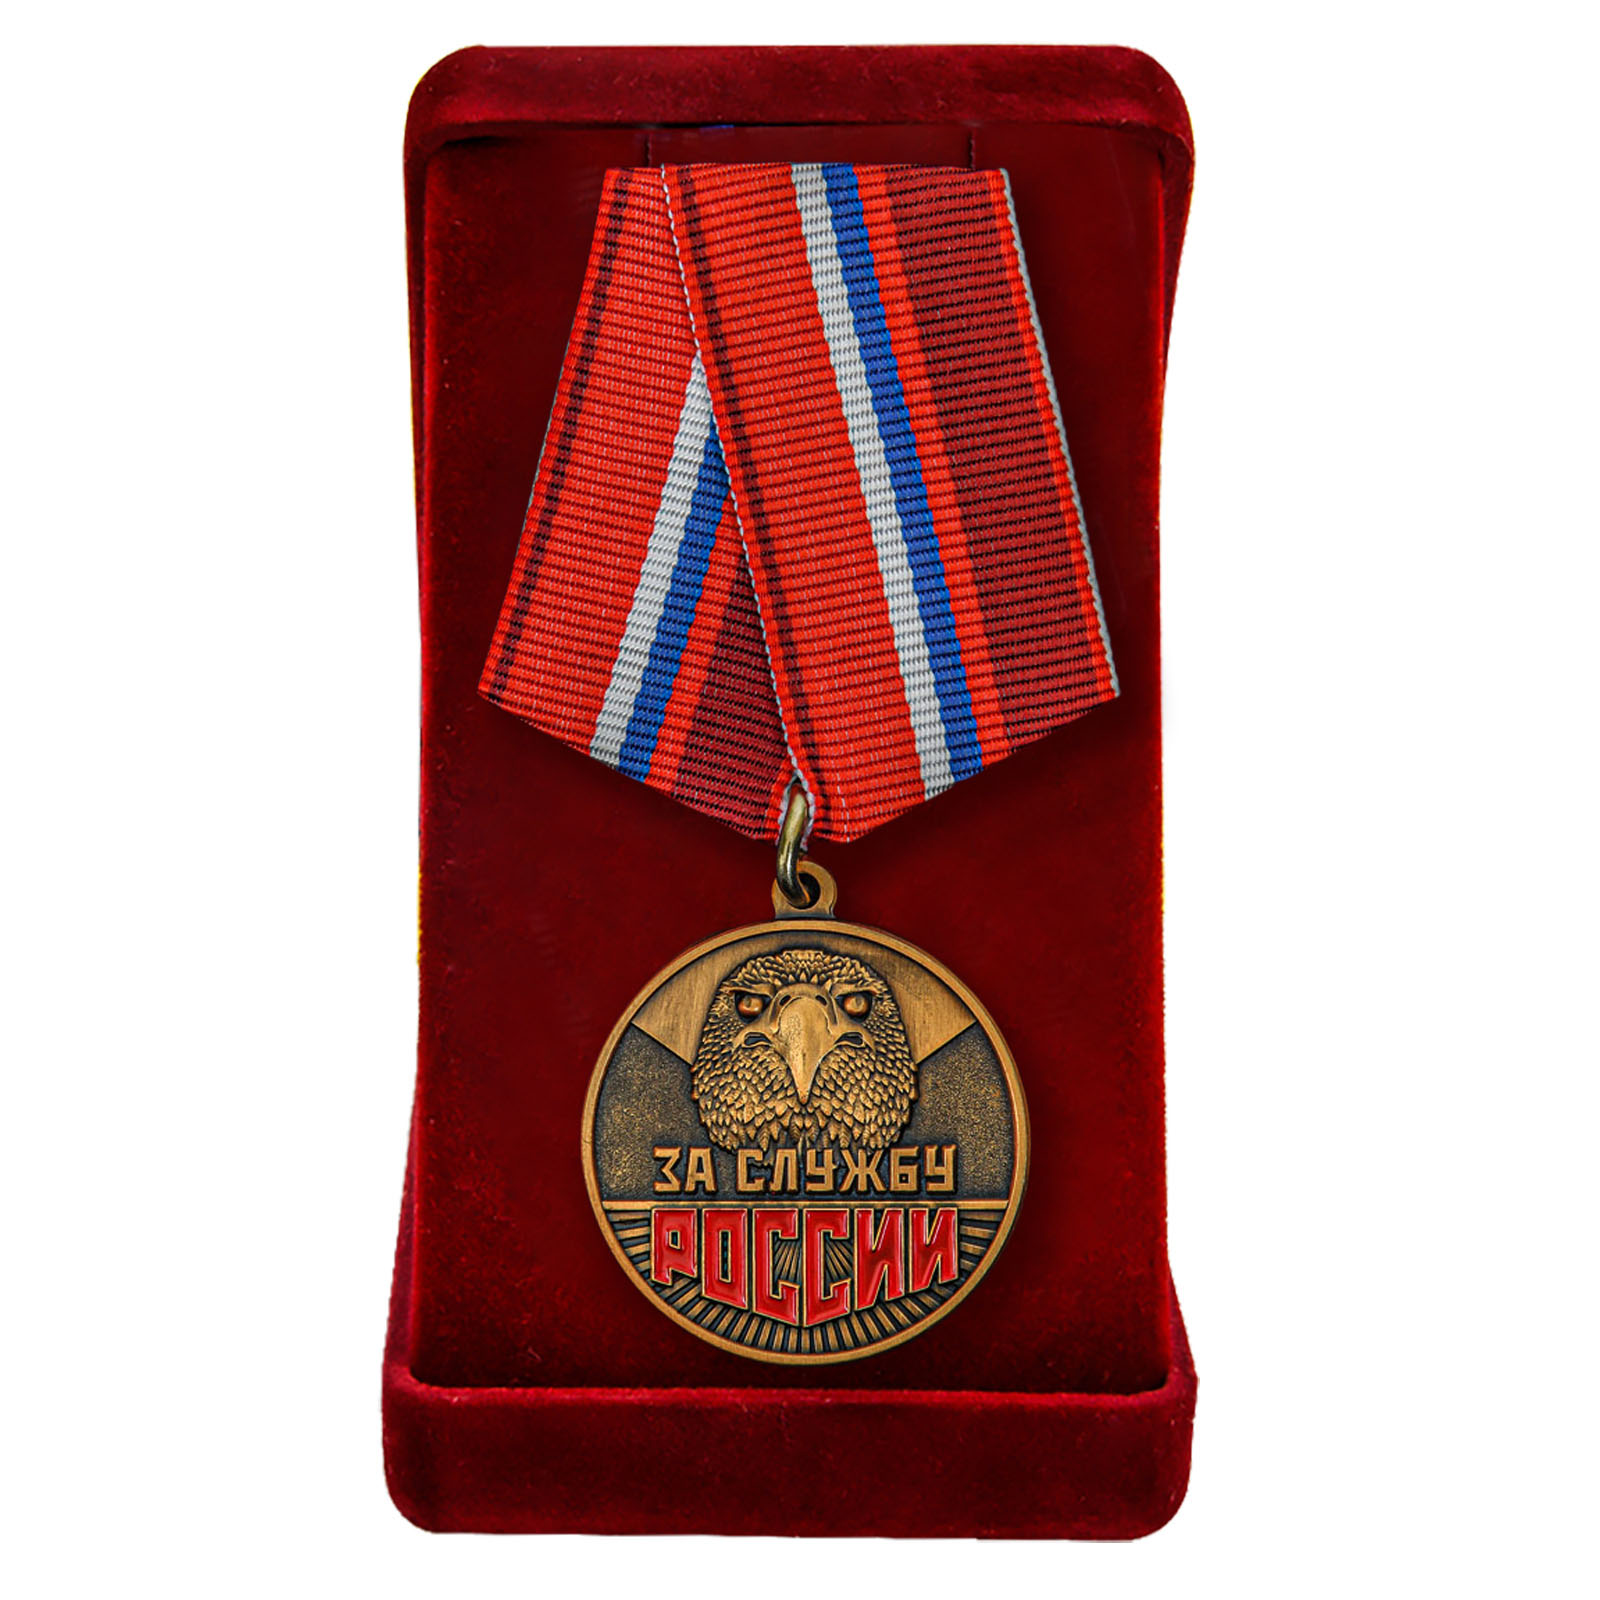 Купить медаль За службу России в подарок